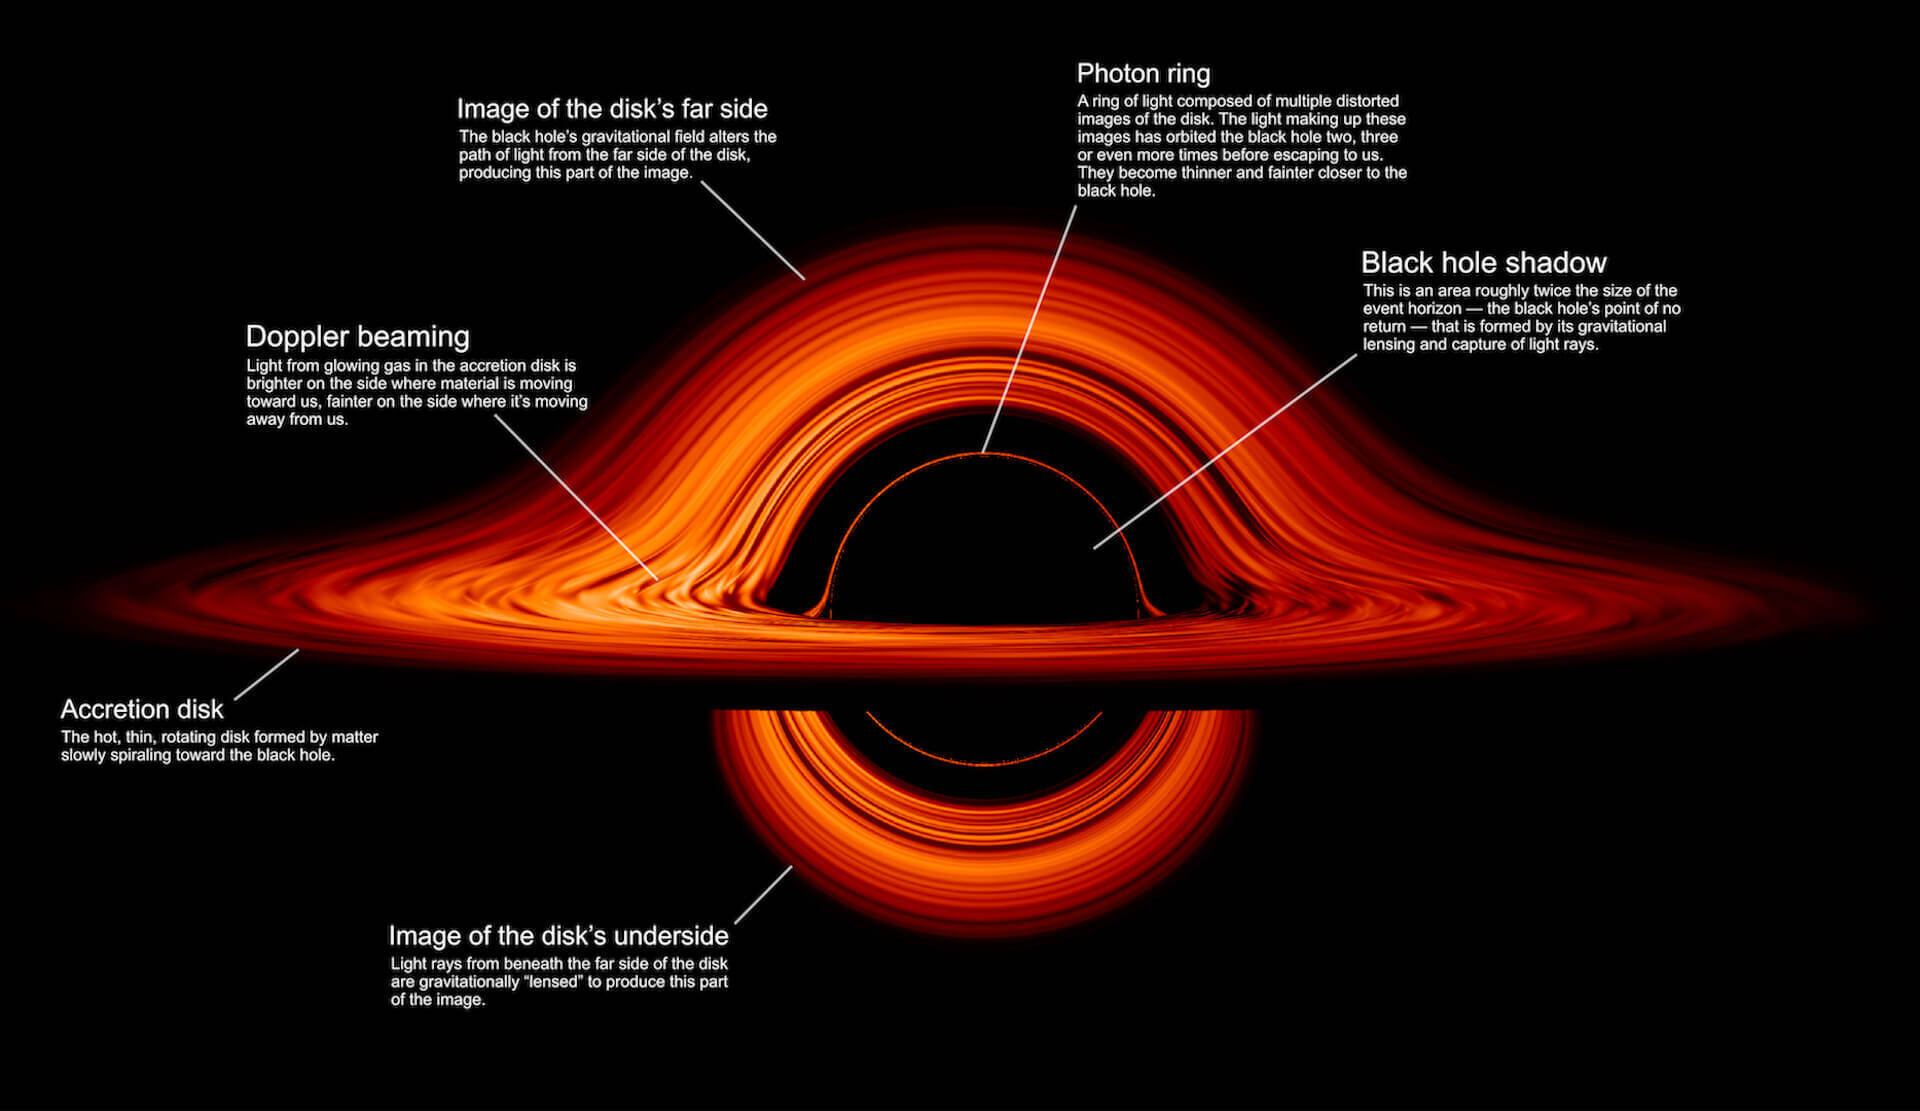 映画 インターステラー そのまま Nasaが公開したブラックホールの最新ヴィジュアルが話題に 19年9月30日 エキサイトニュース